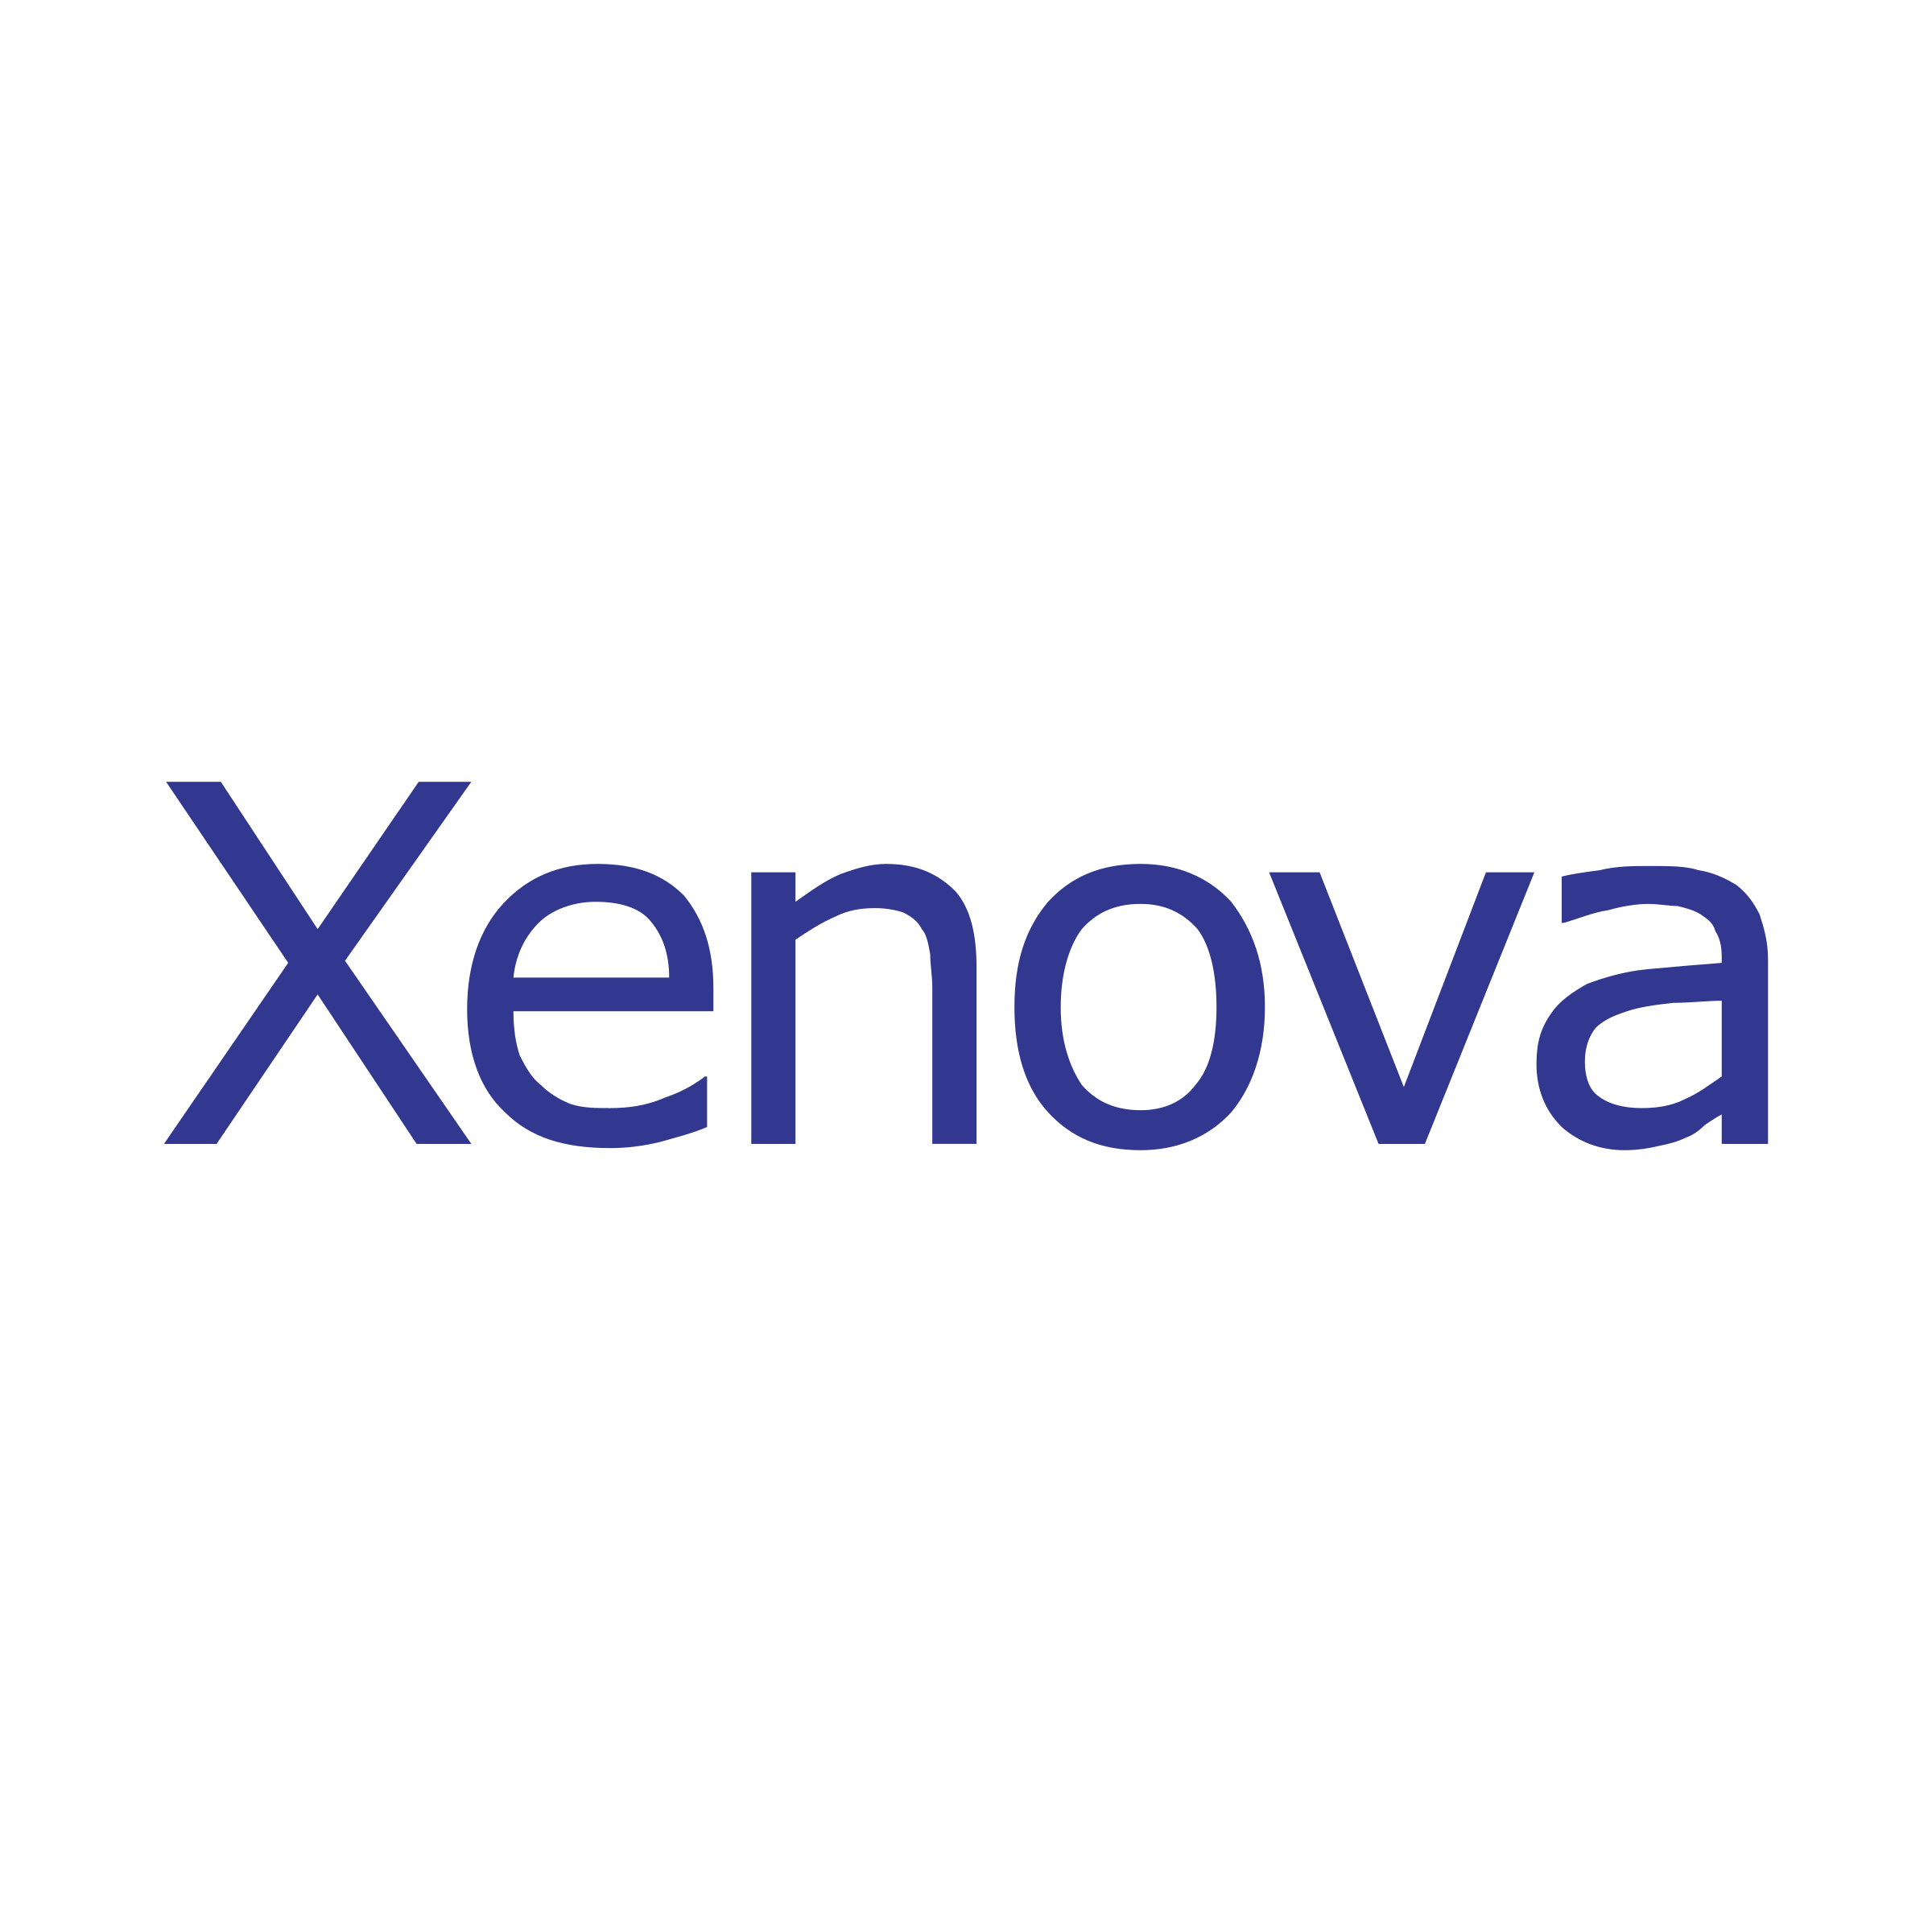 Xenova Logo - Xenova Group Logo PNG Transparent & SVG Vector